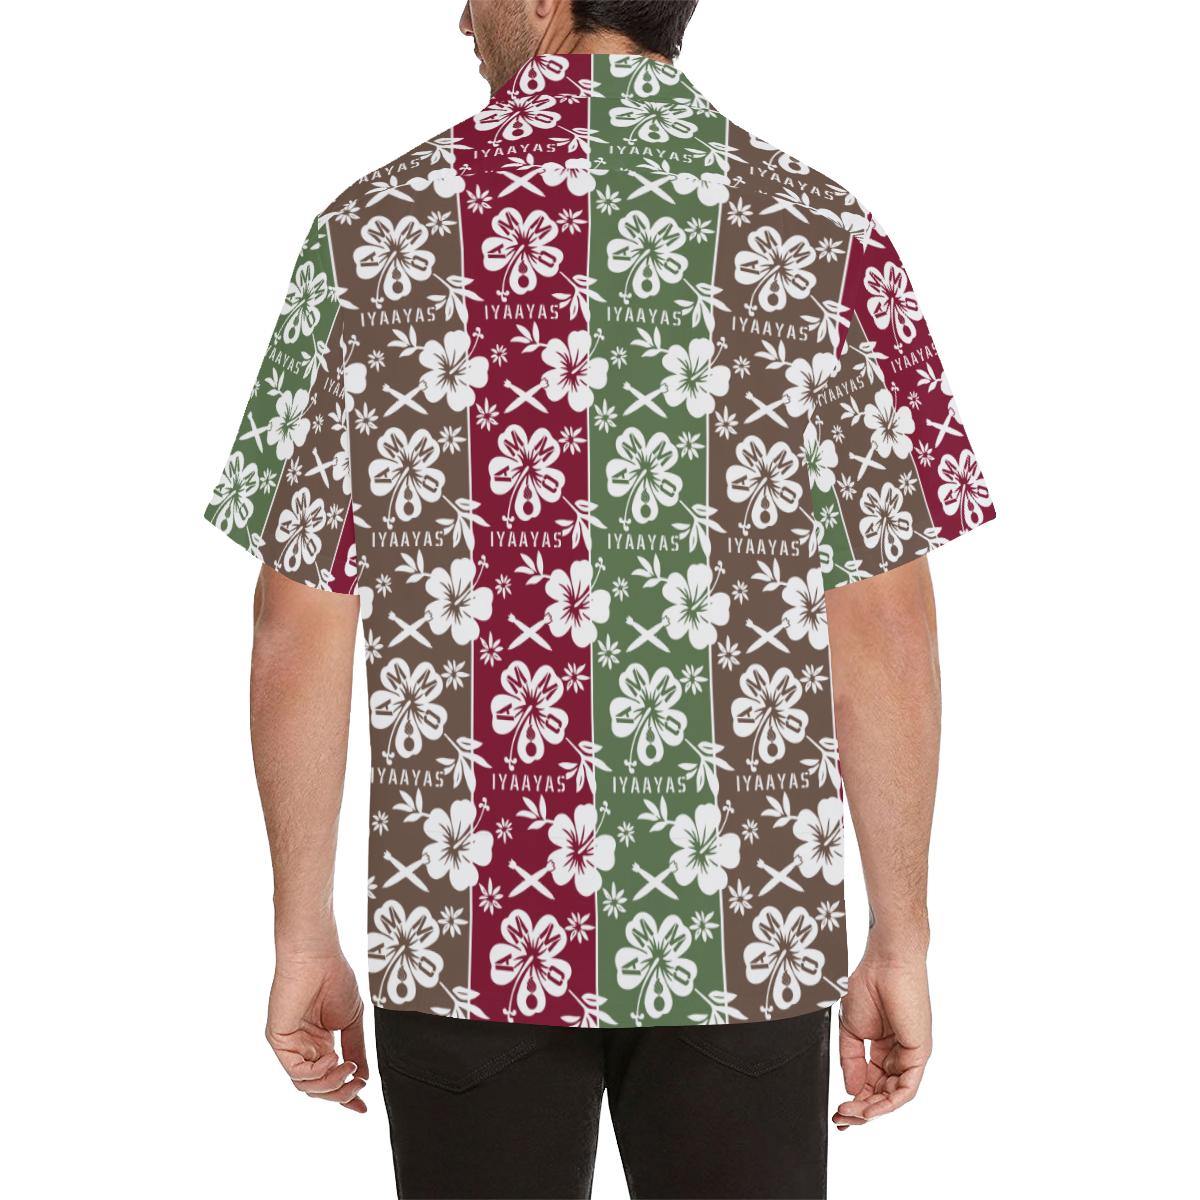 AMMO Hawaiian Shirt Vertical Rows of Flowers AMMO and IYAAYAS - AMMO Pisspot IYAAYAS Gear